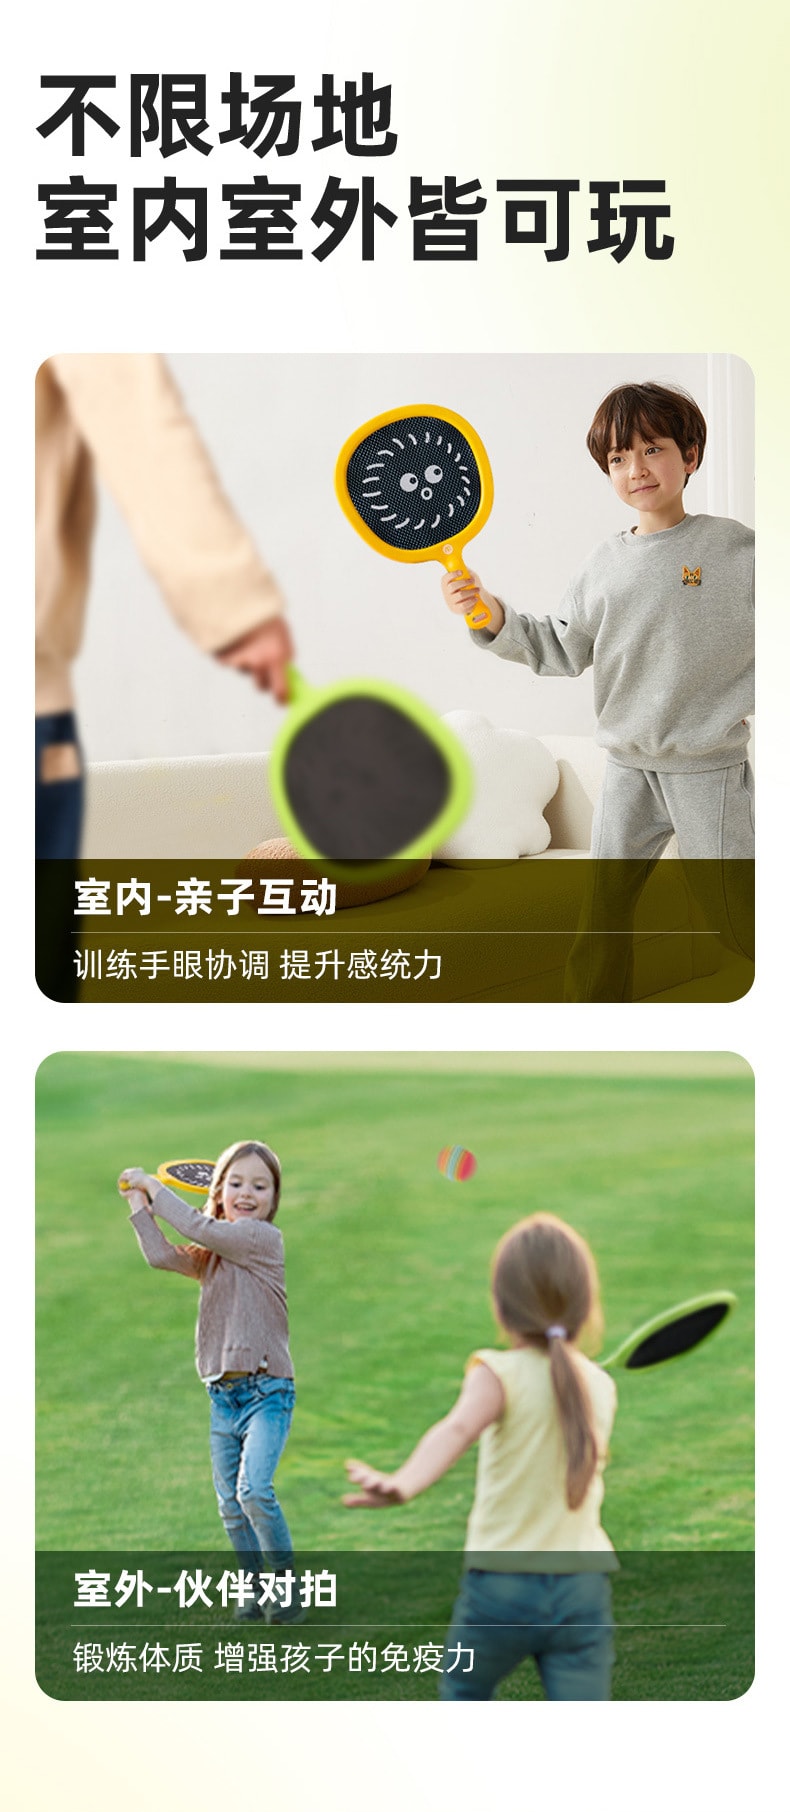 【彌鹿】兒童戶外玩具球拍 室內運動網球拍